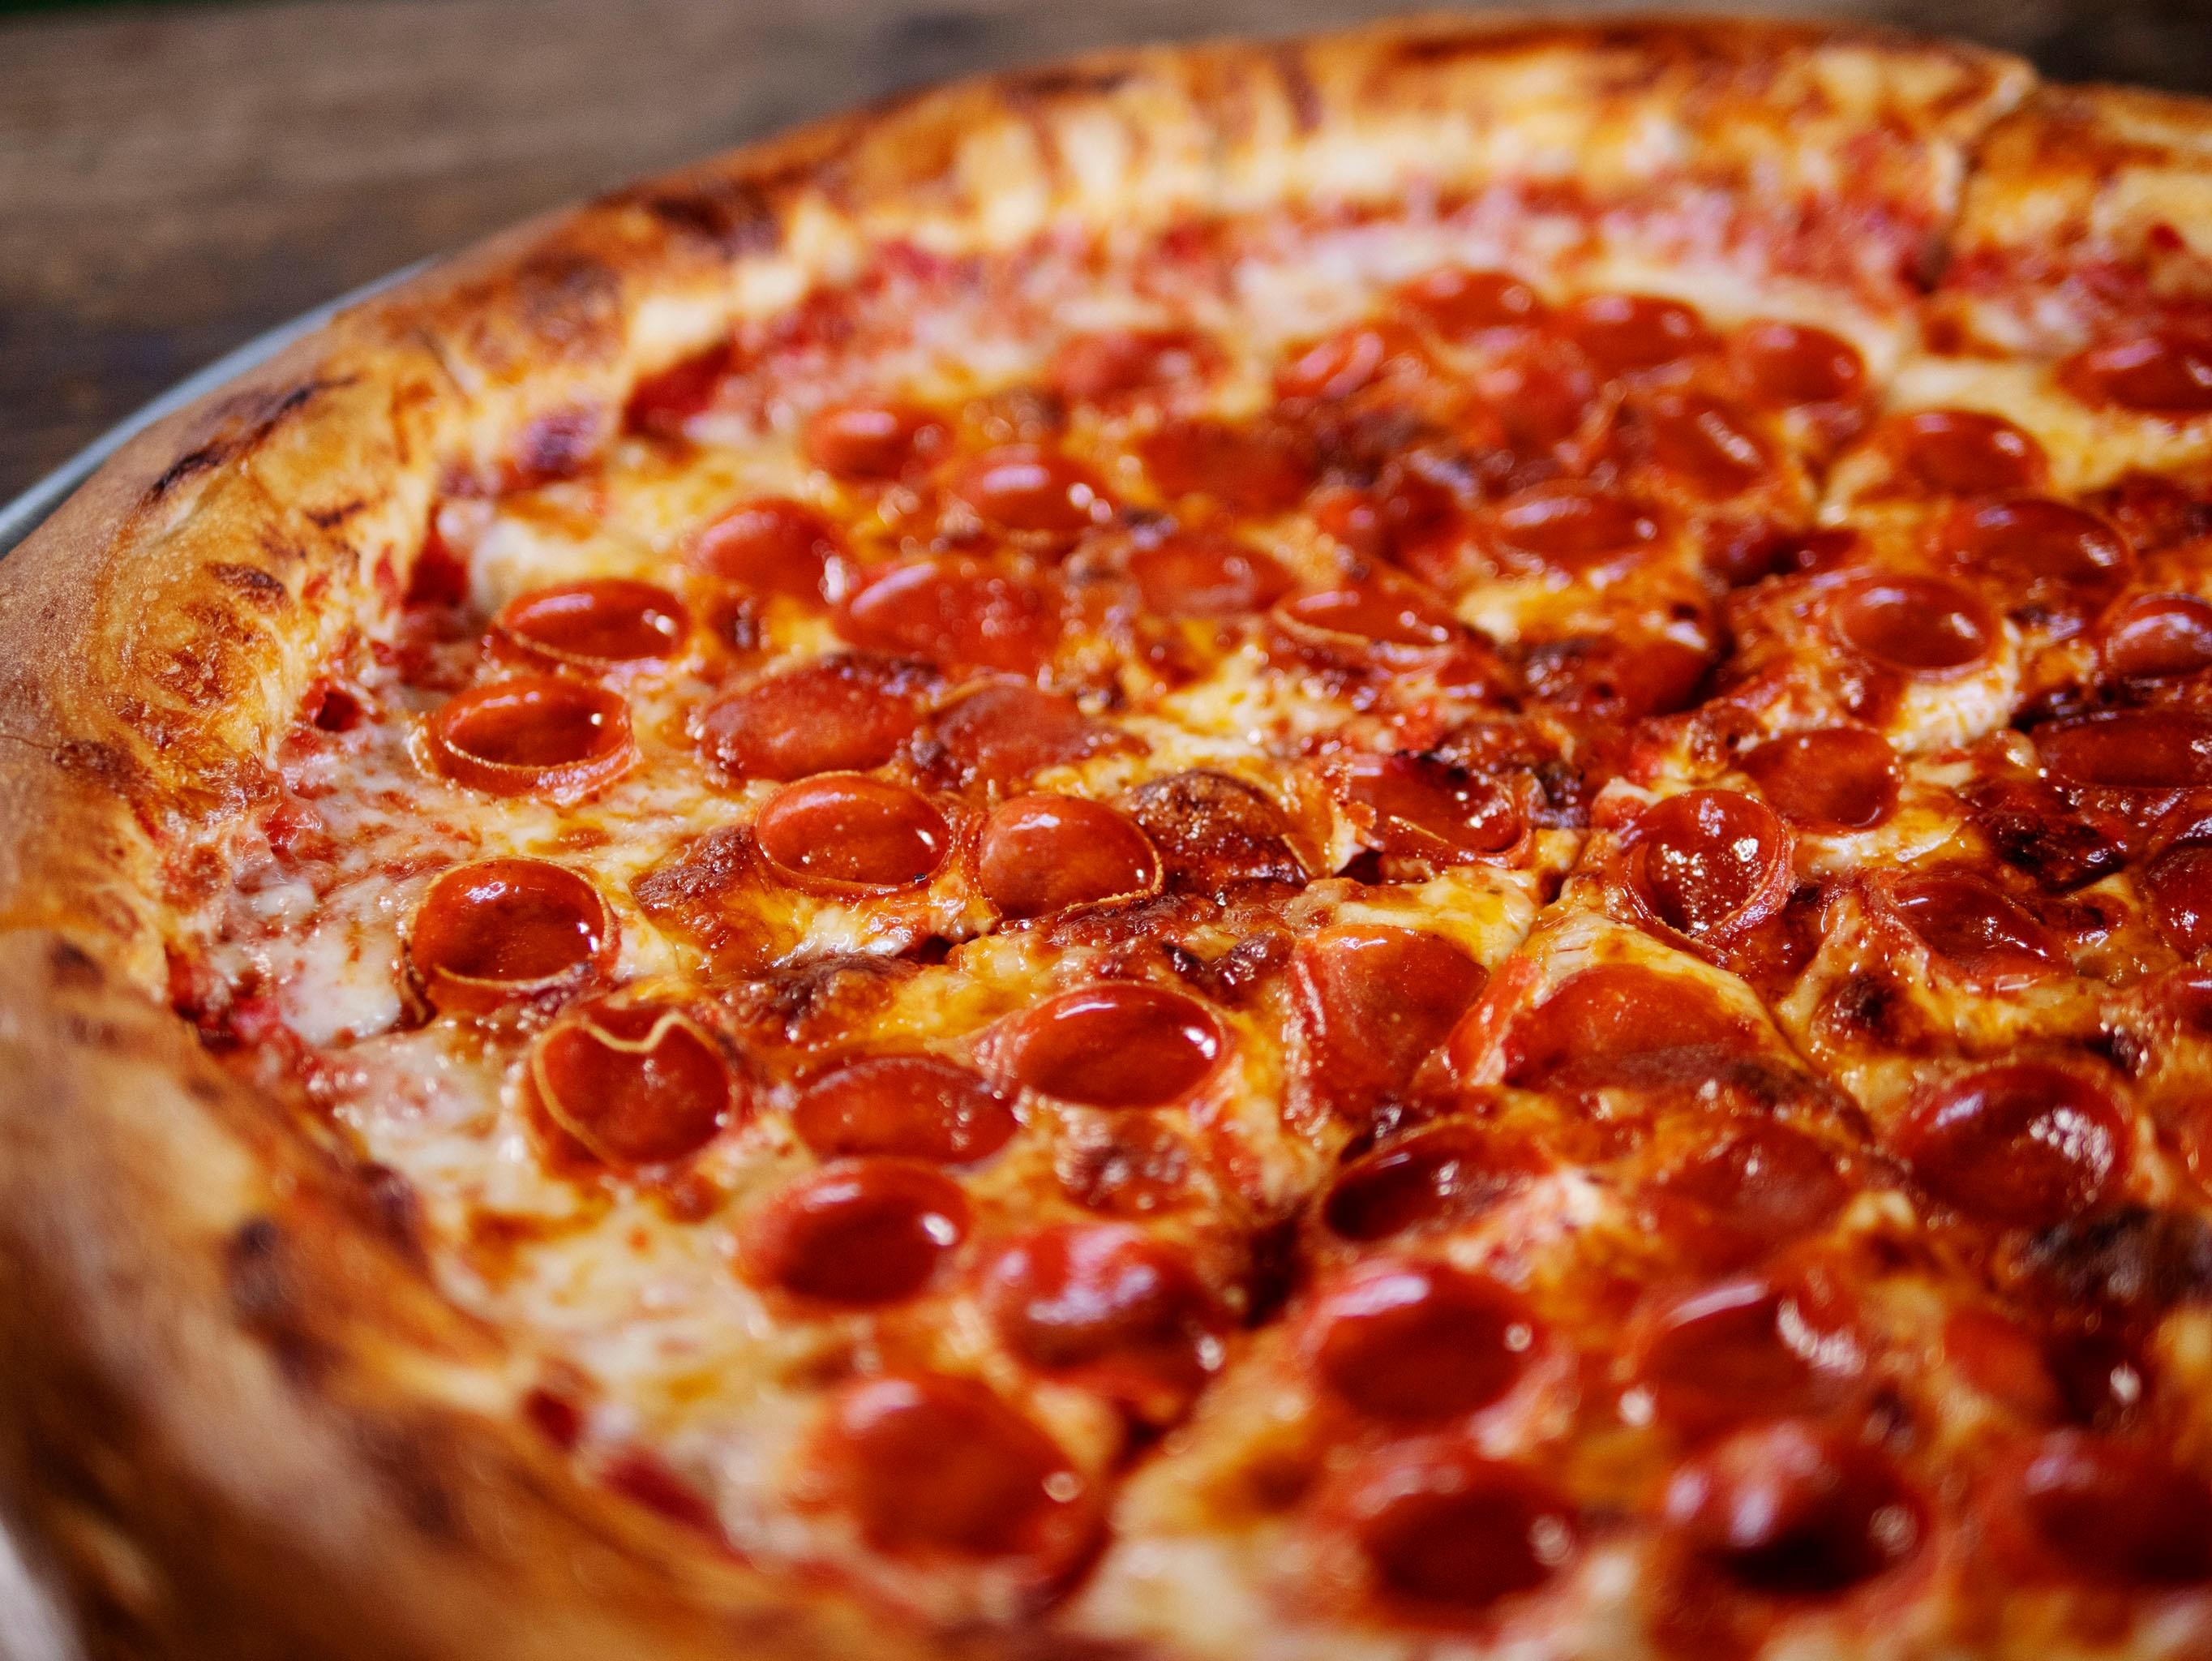 Pepperonni Pizza 14"